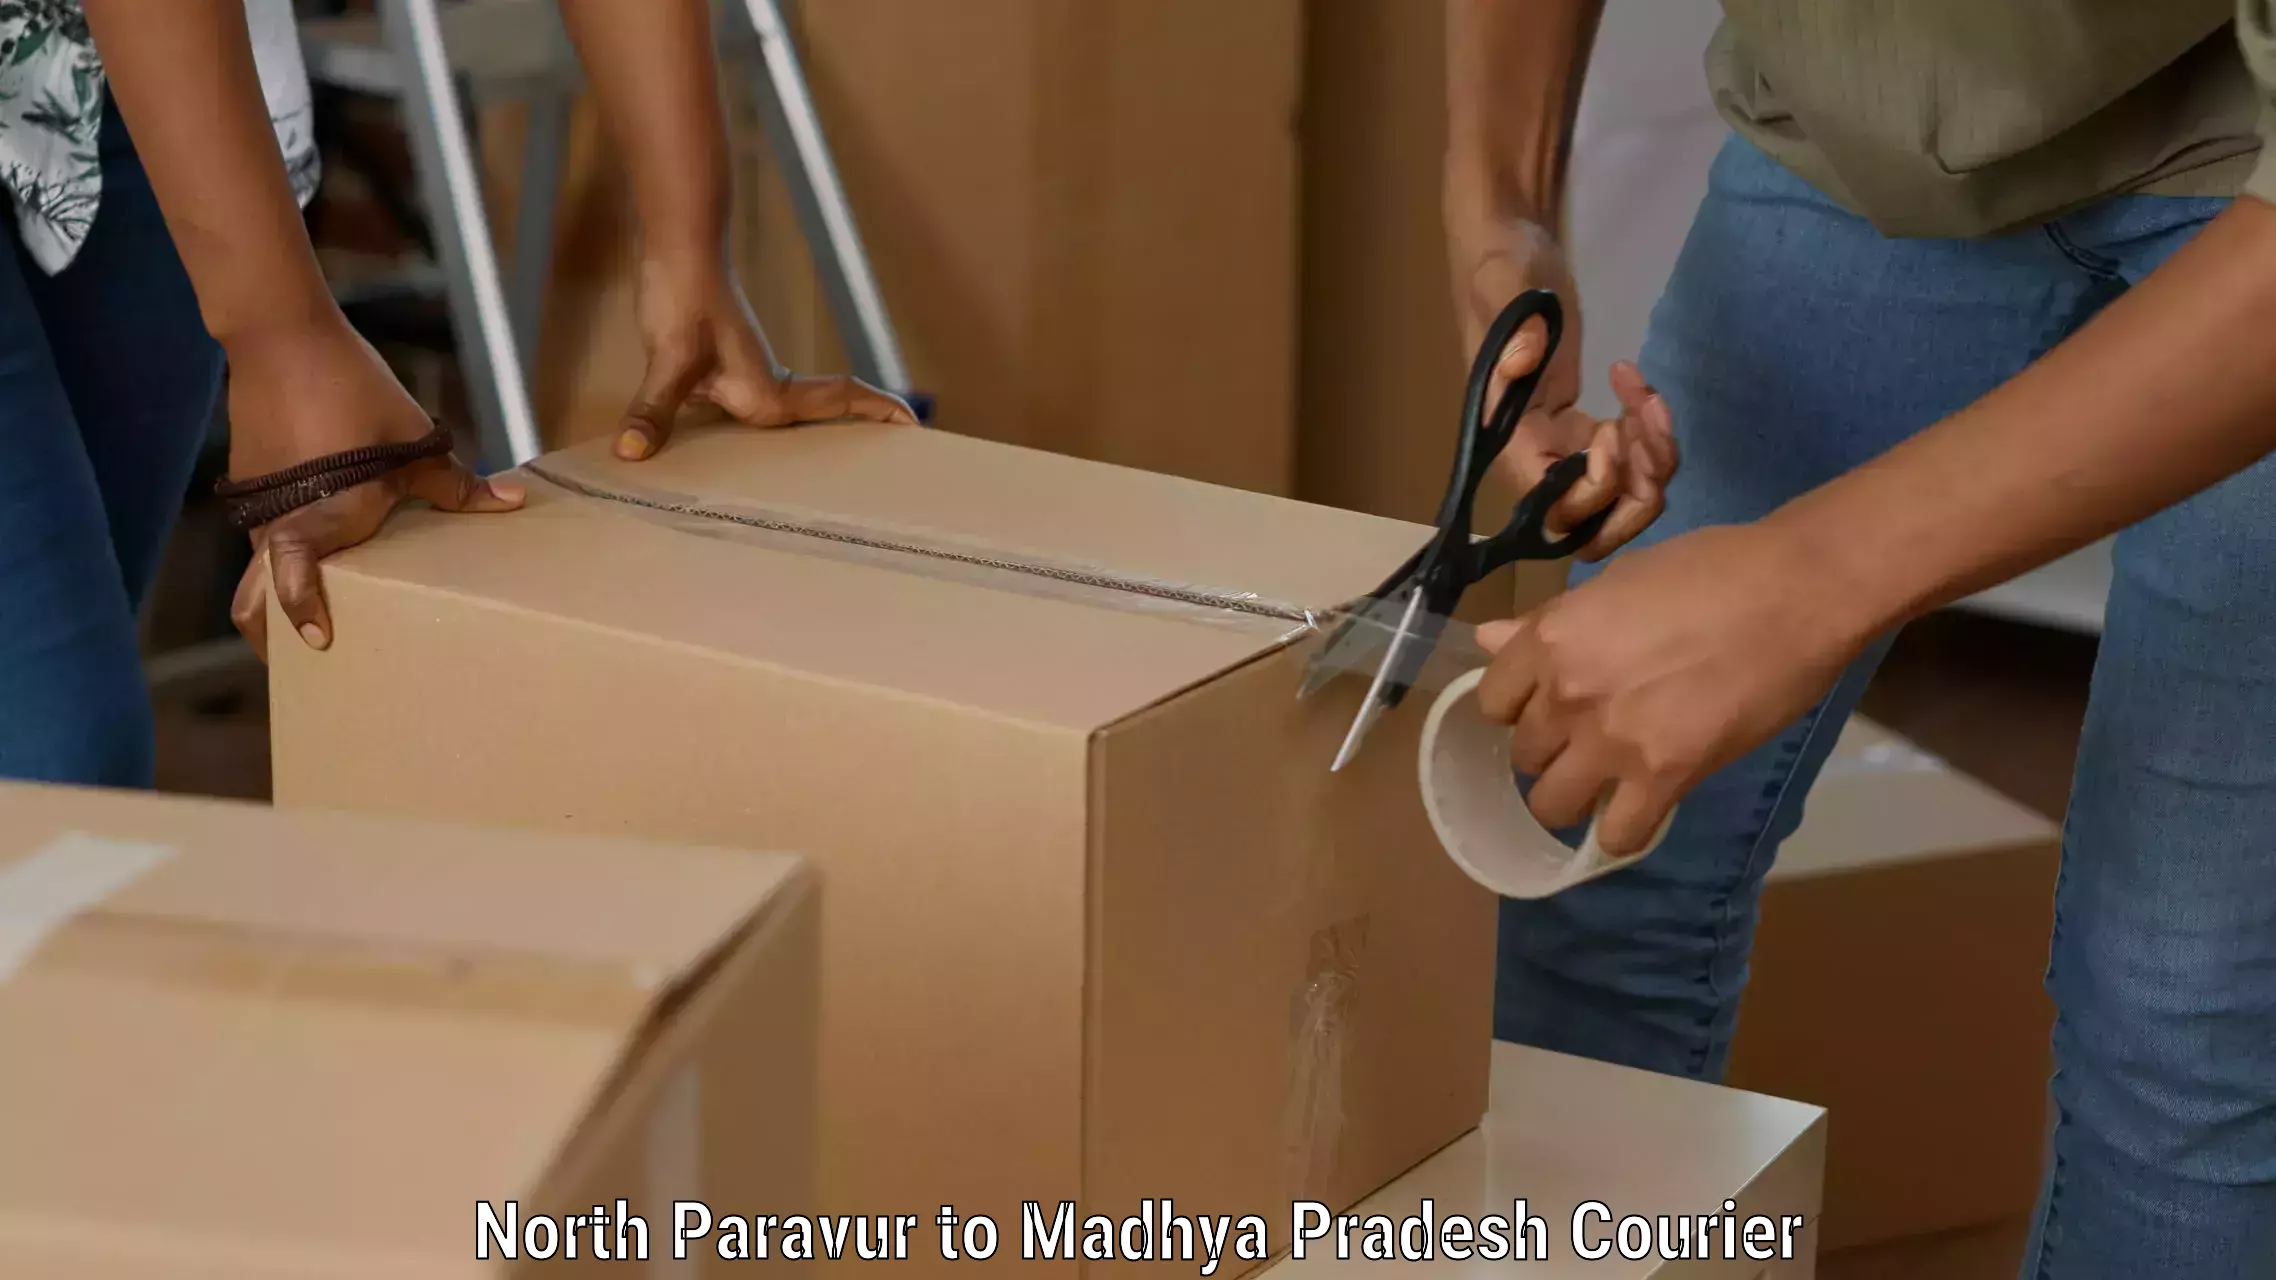 Lightweight courier North Paravur to Dewas